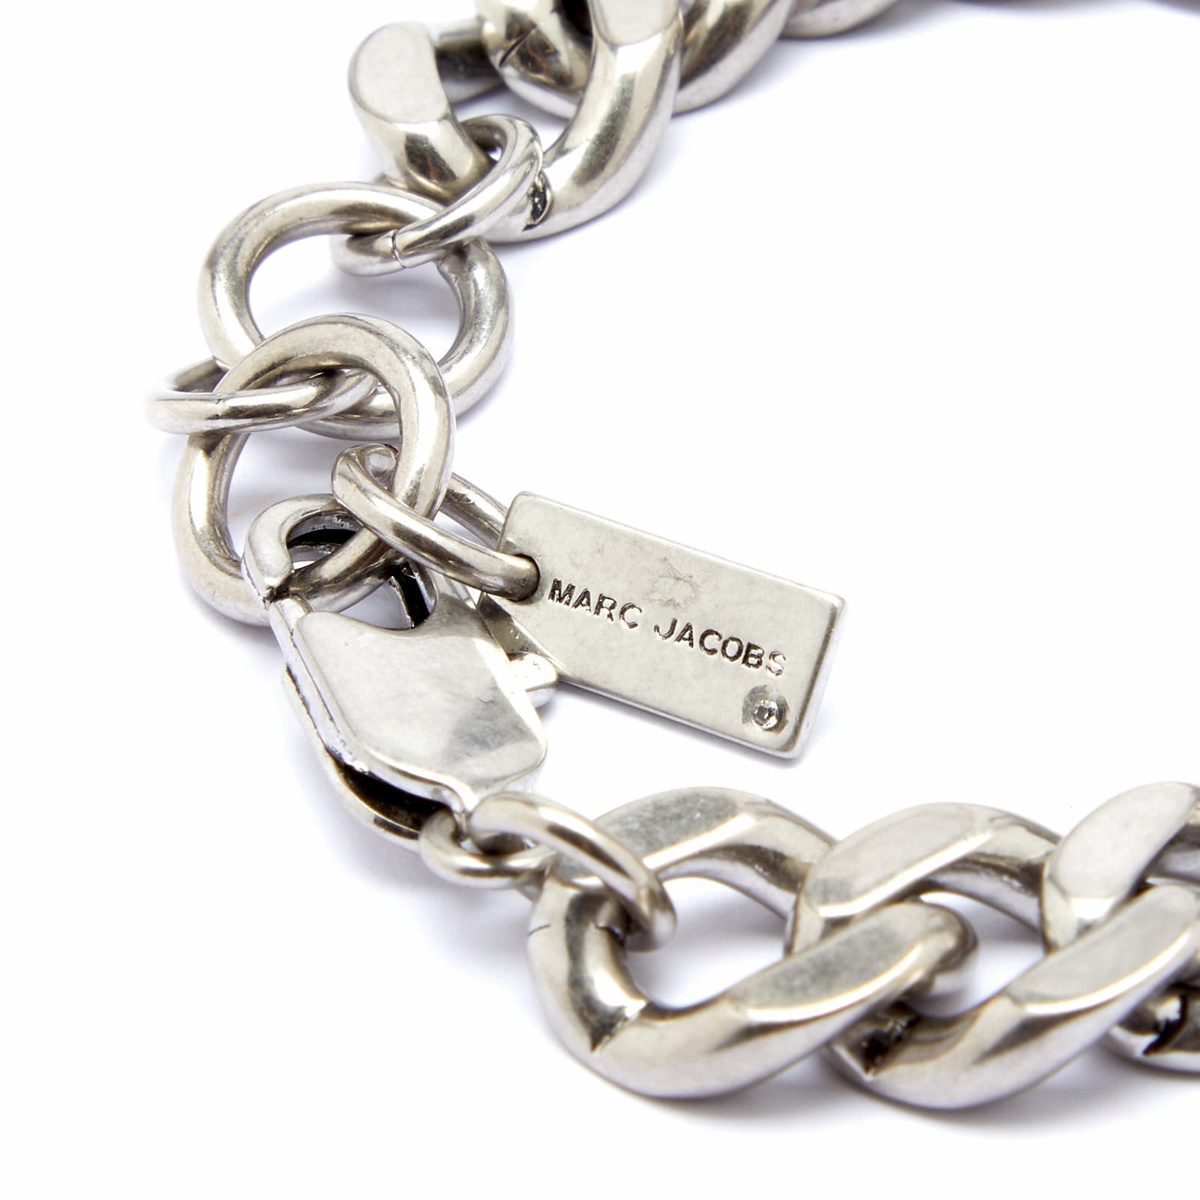 Marc Jacobs bracelet | Marc jacobs bracelet, Marc jacobs, Bracelet shops